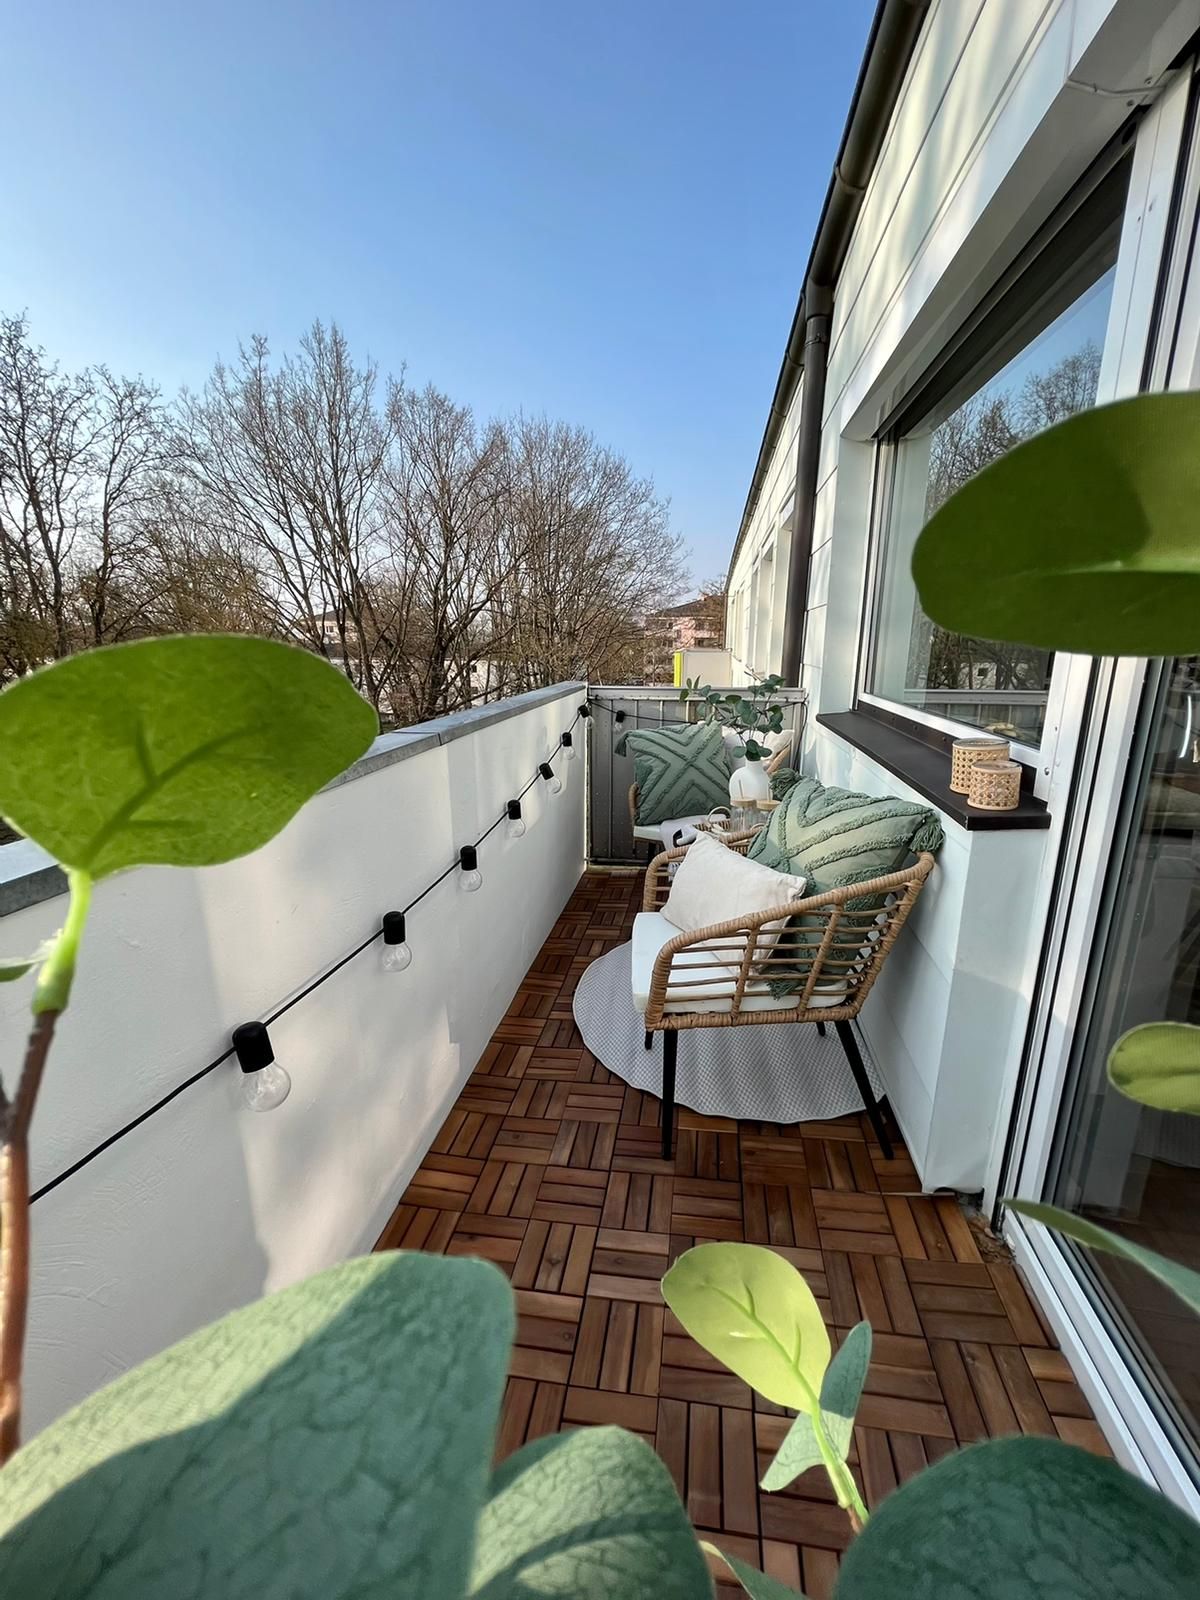 3 room design flat with balcony in Ingolstadt